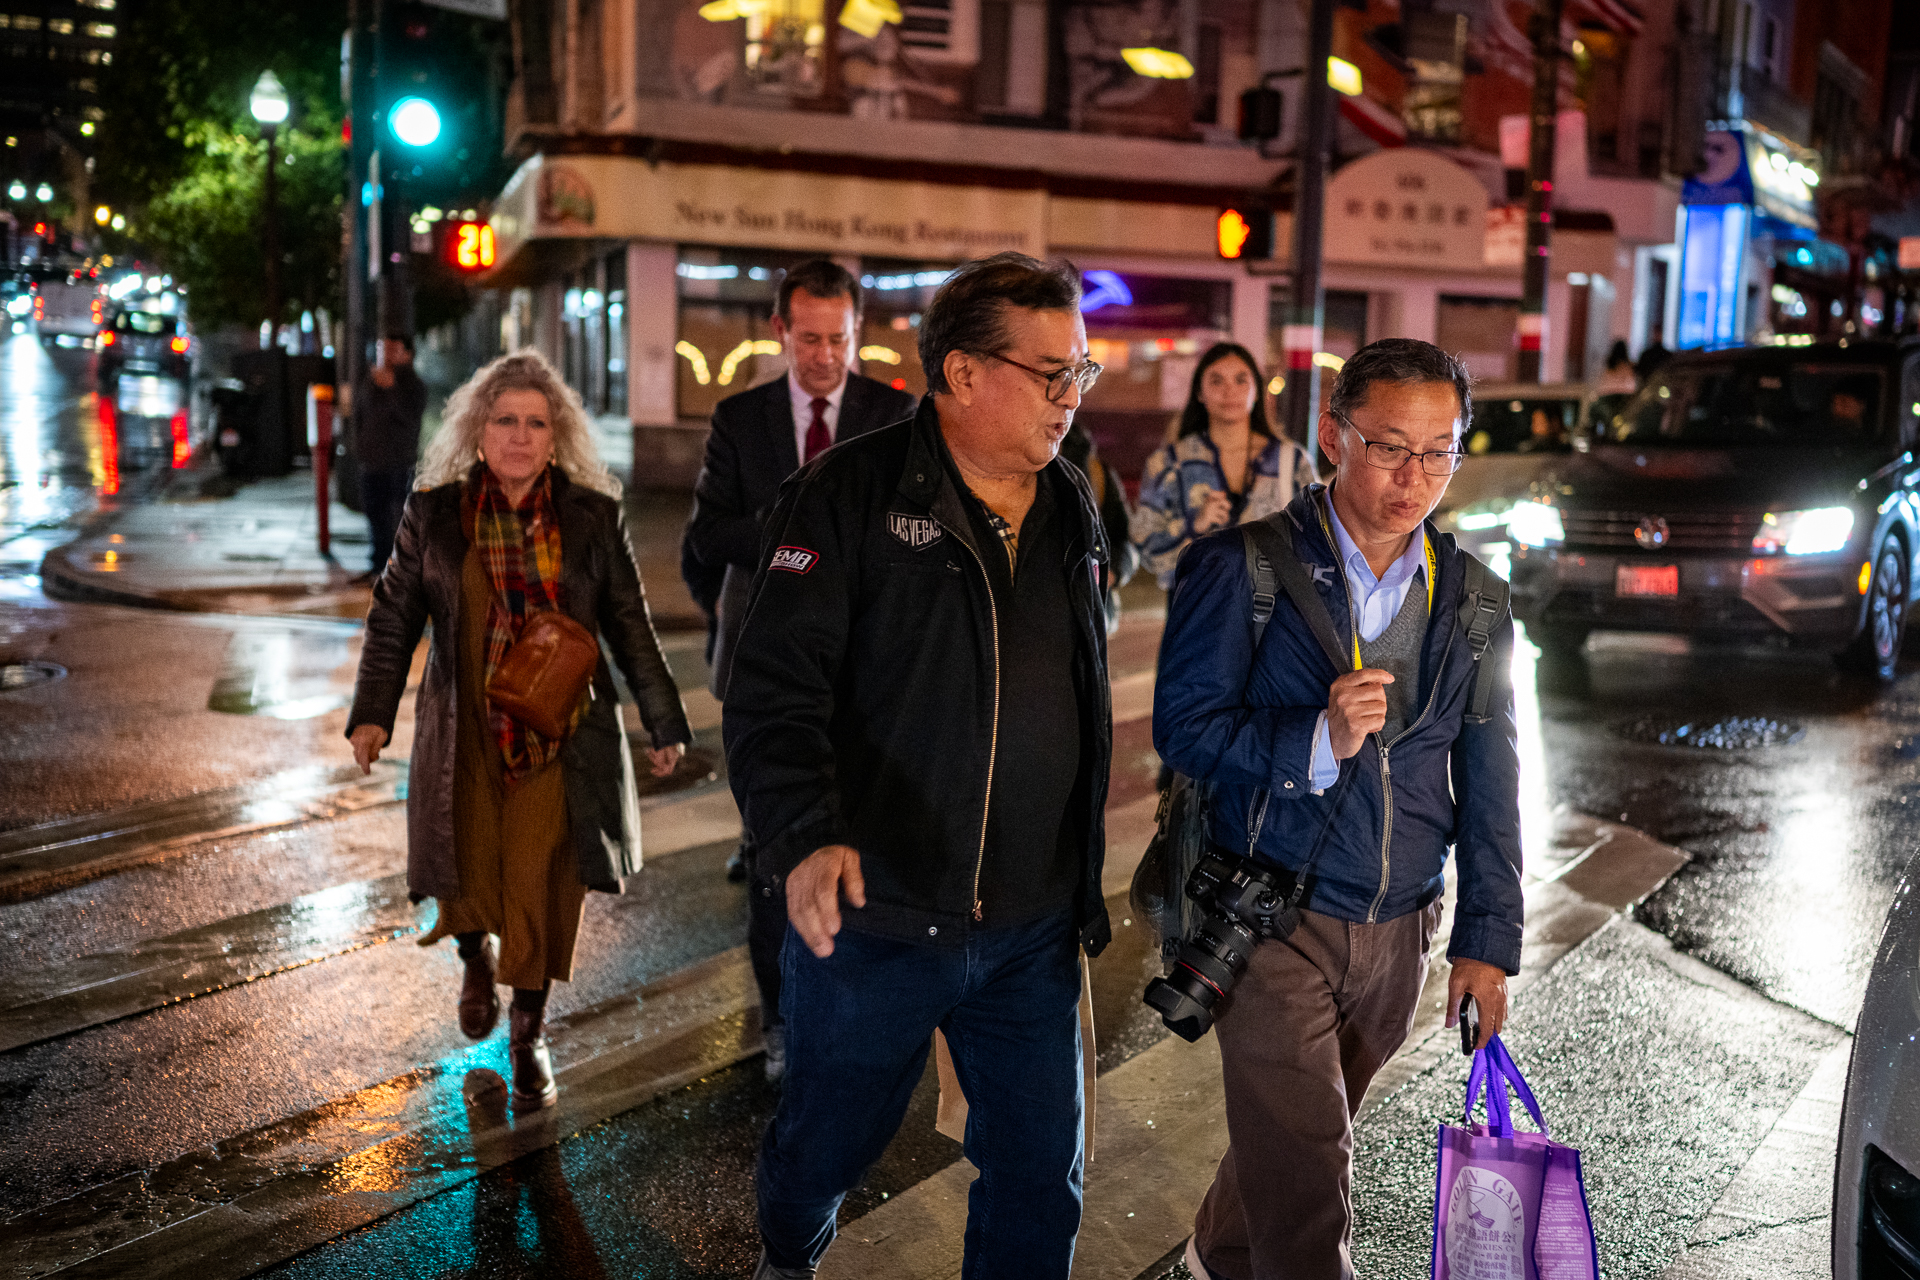 A group of people walk on a crosswalk across a wet city street.